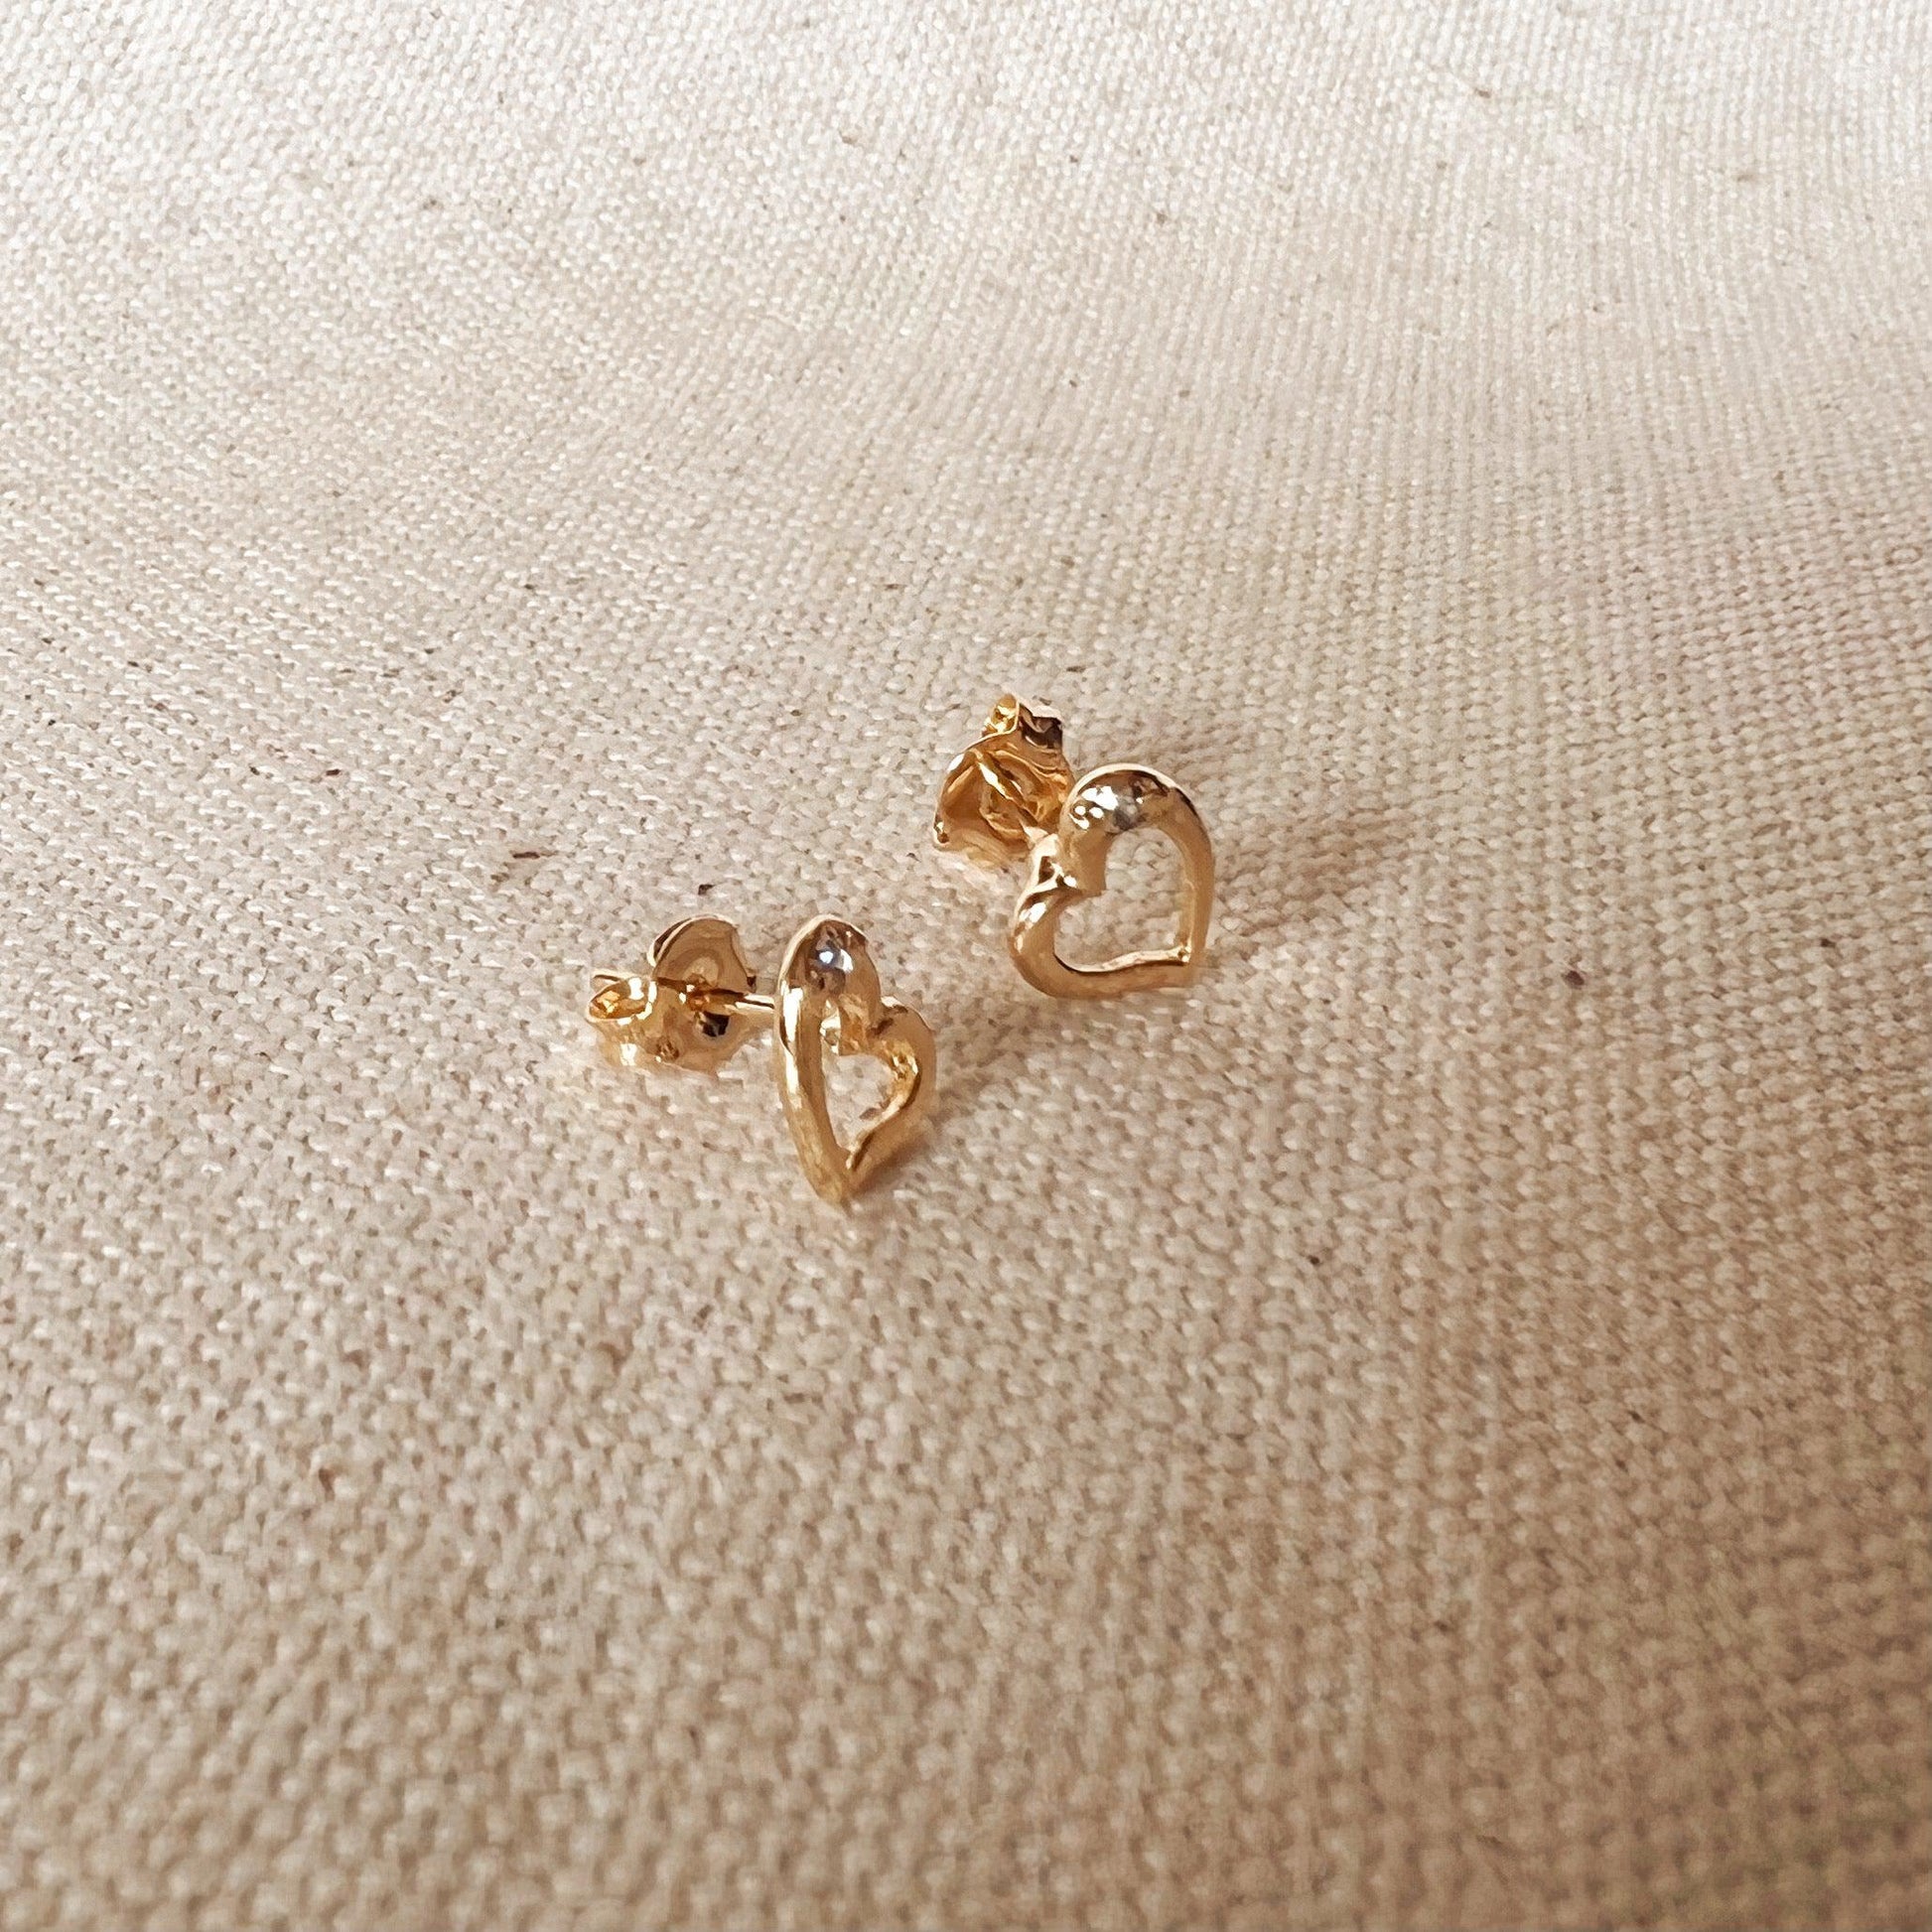 GoldFi 18k Gold Filled Dainty Heart Studs Earrings